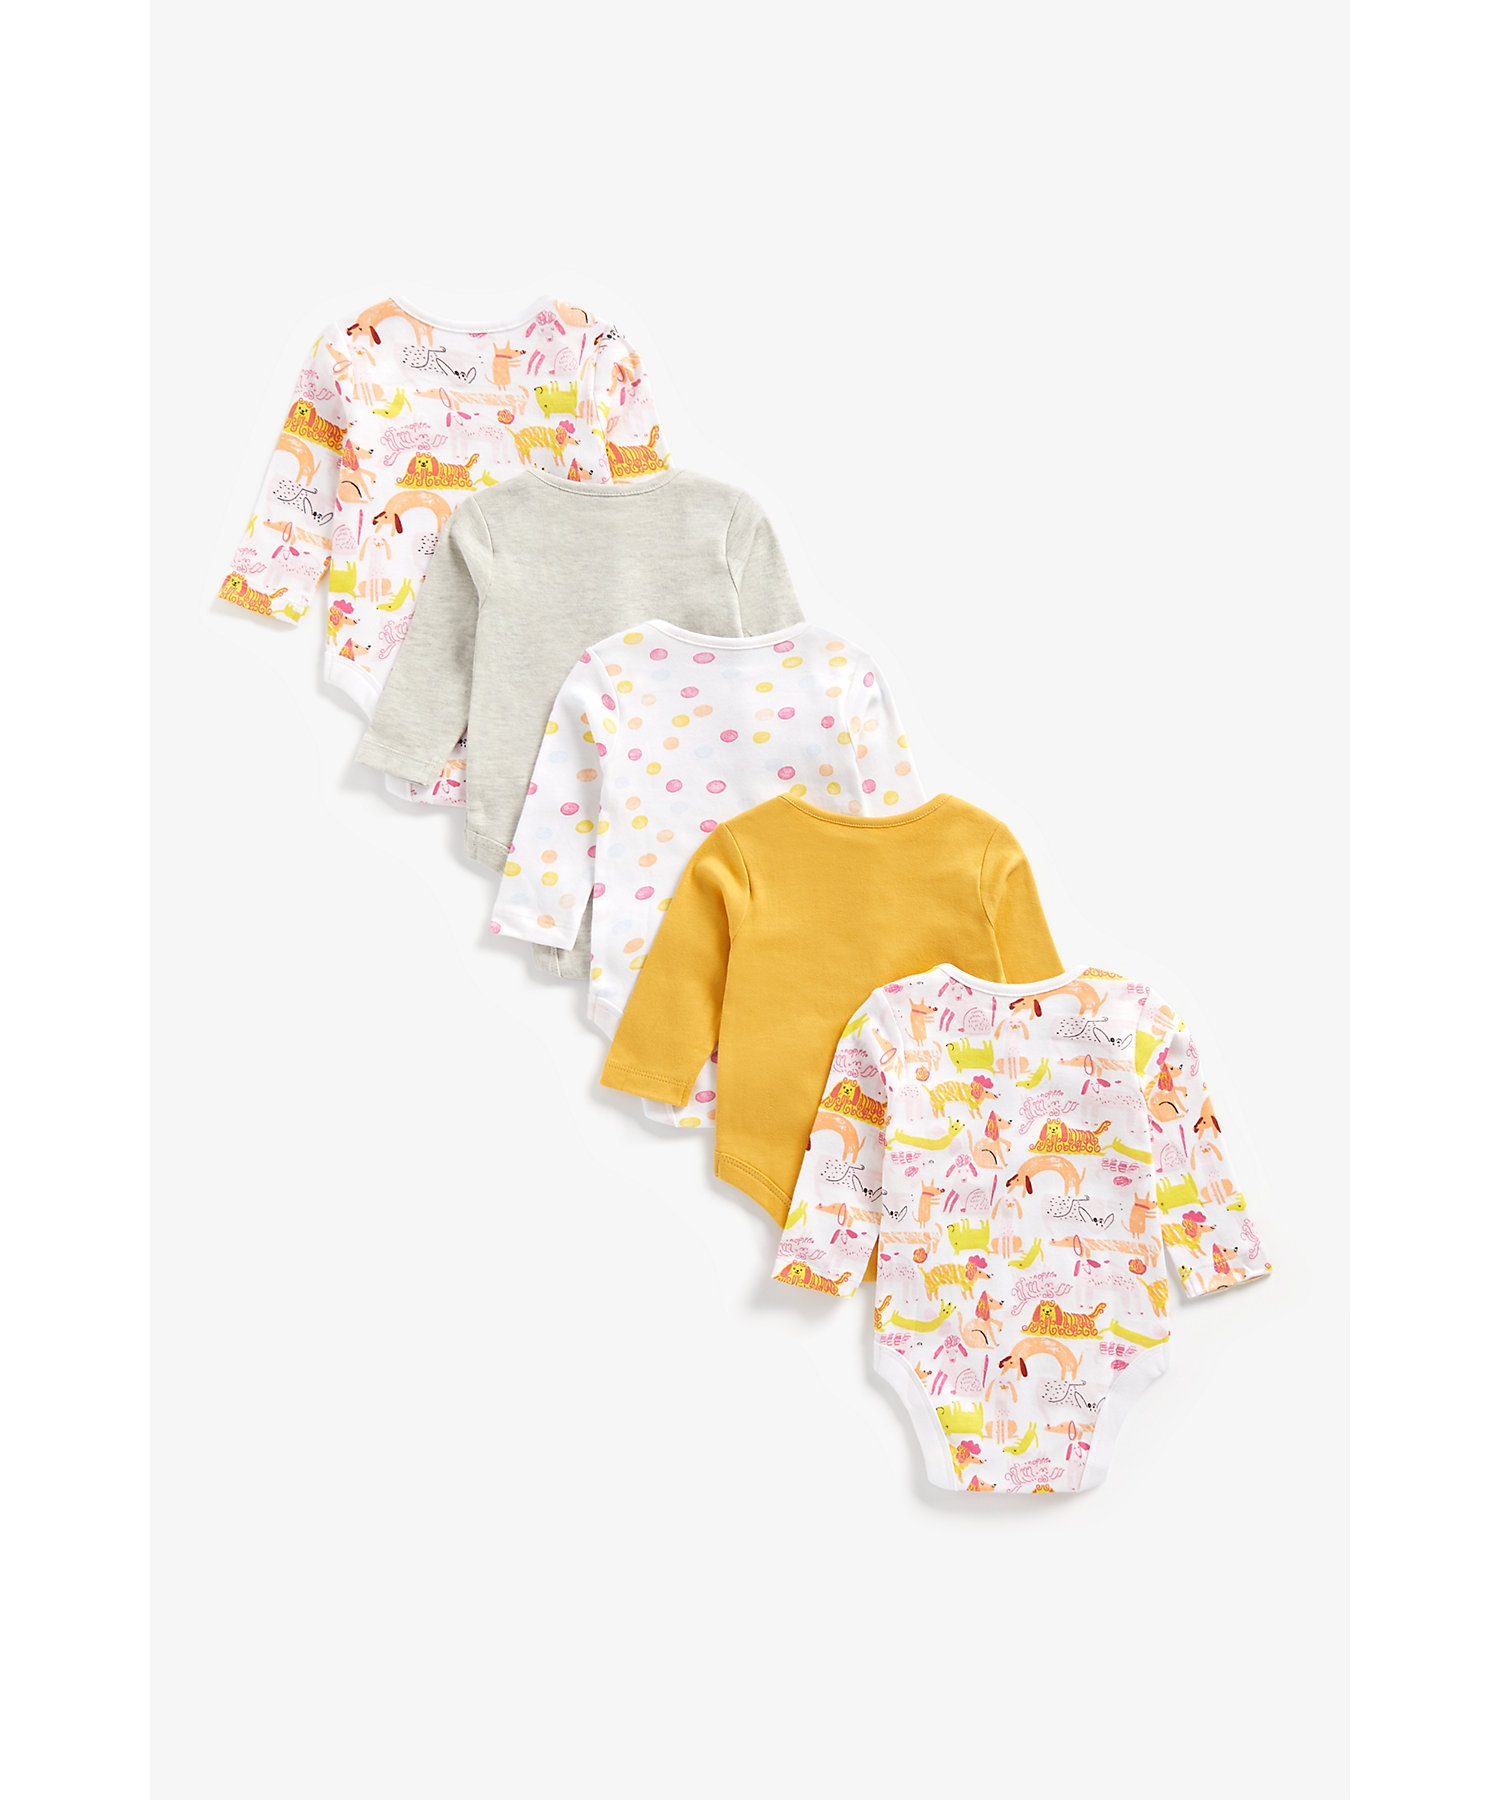 Girls Full Sleeves Bodysuit Dog Print - Pack Of 5 - Multicolor